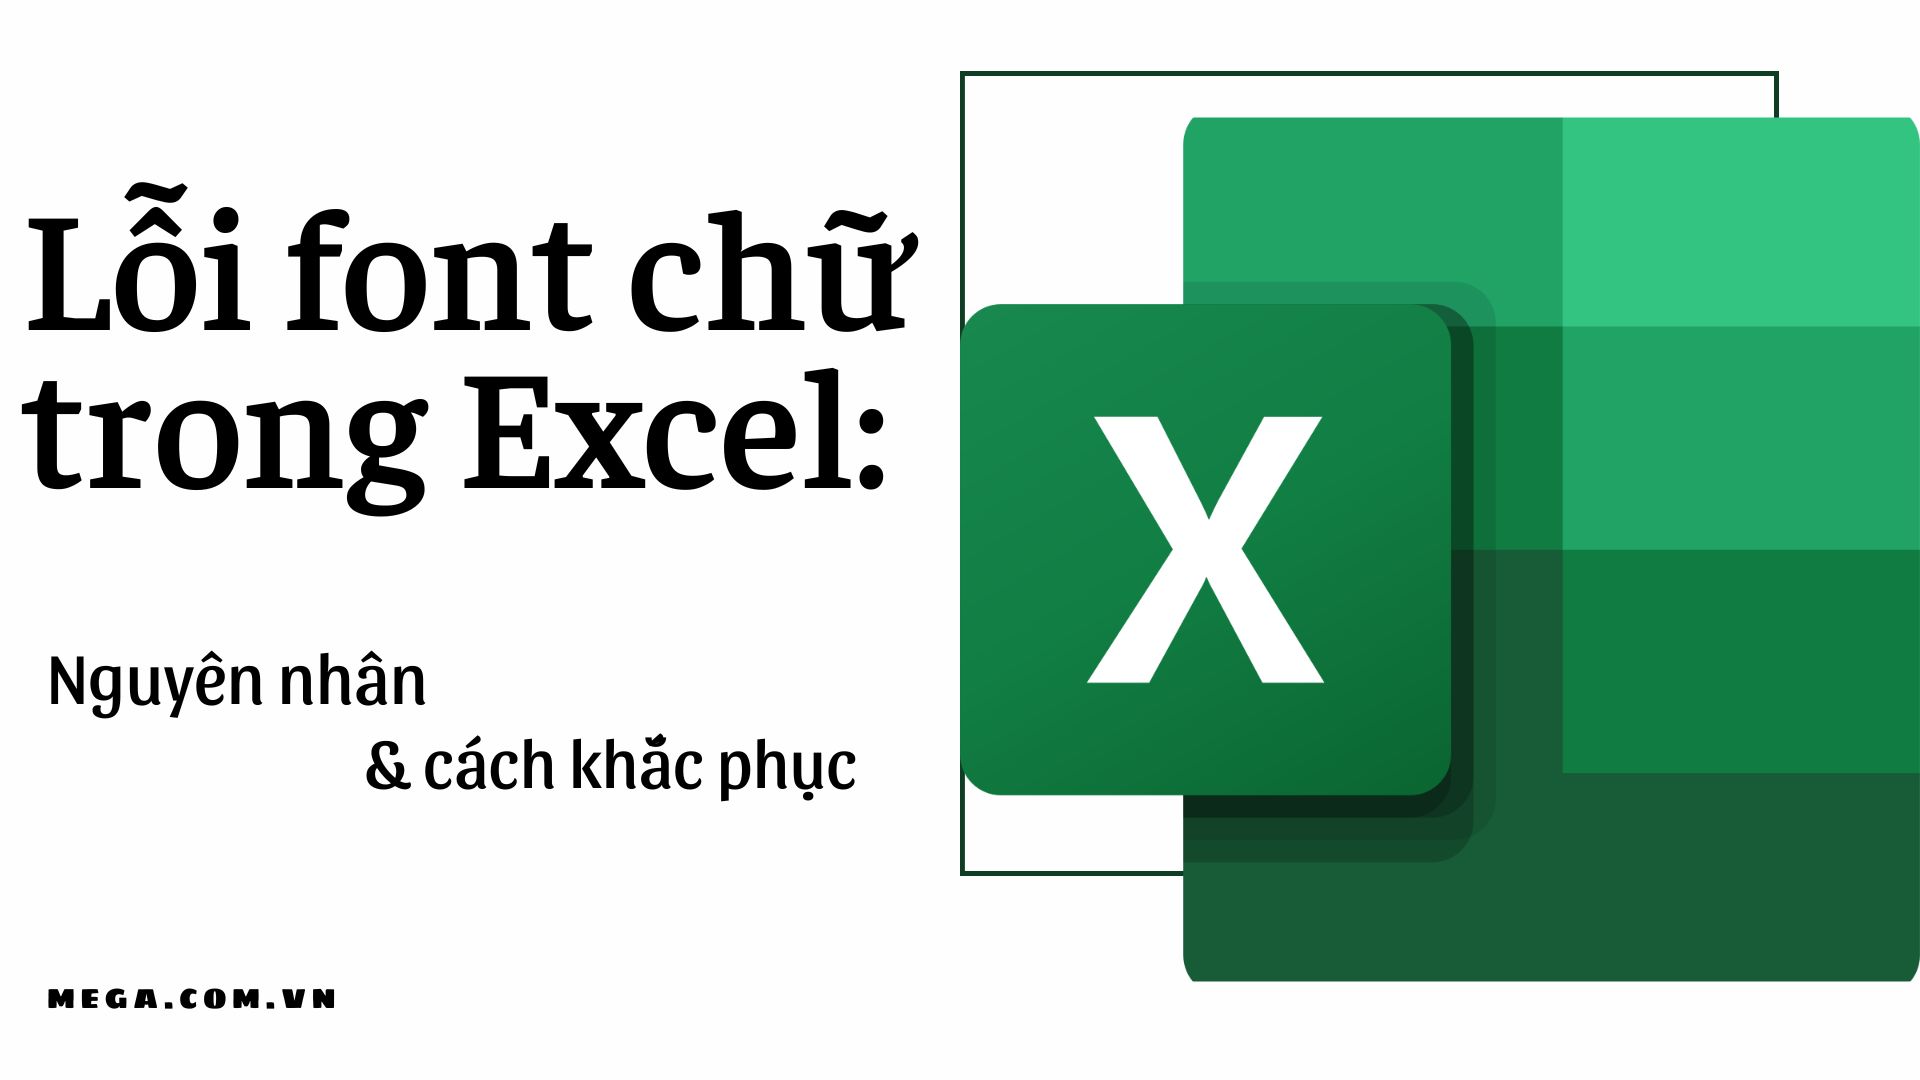 Những lỗi font chữ trên Excel 2024 giờ đây đã được khắc phục một cách toàn diện. Bạn có thể yên tâm là công việc của mình sẽ không bị gián đoạn bởi những lỗi font chữ nữa. Điều này giúp tăng tính ổn định và đảm bảo chất lượng công việc.